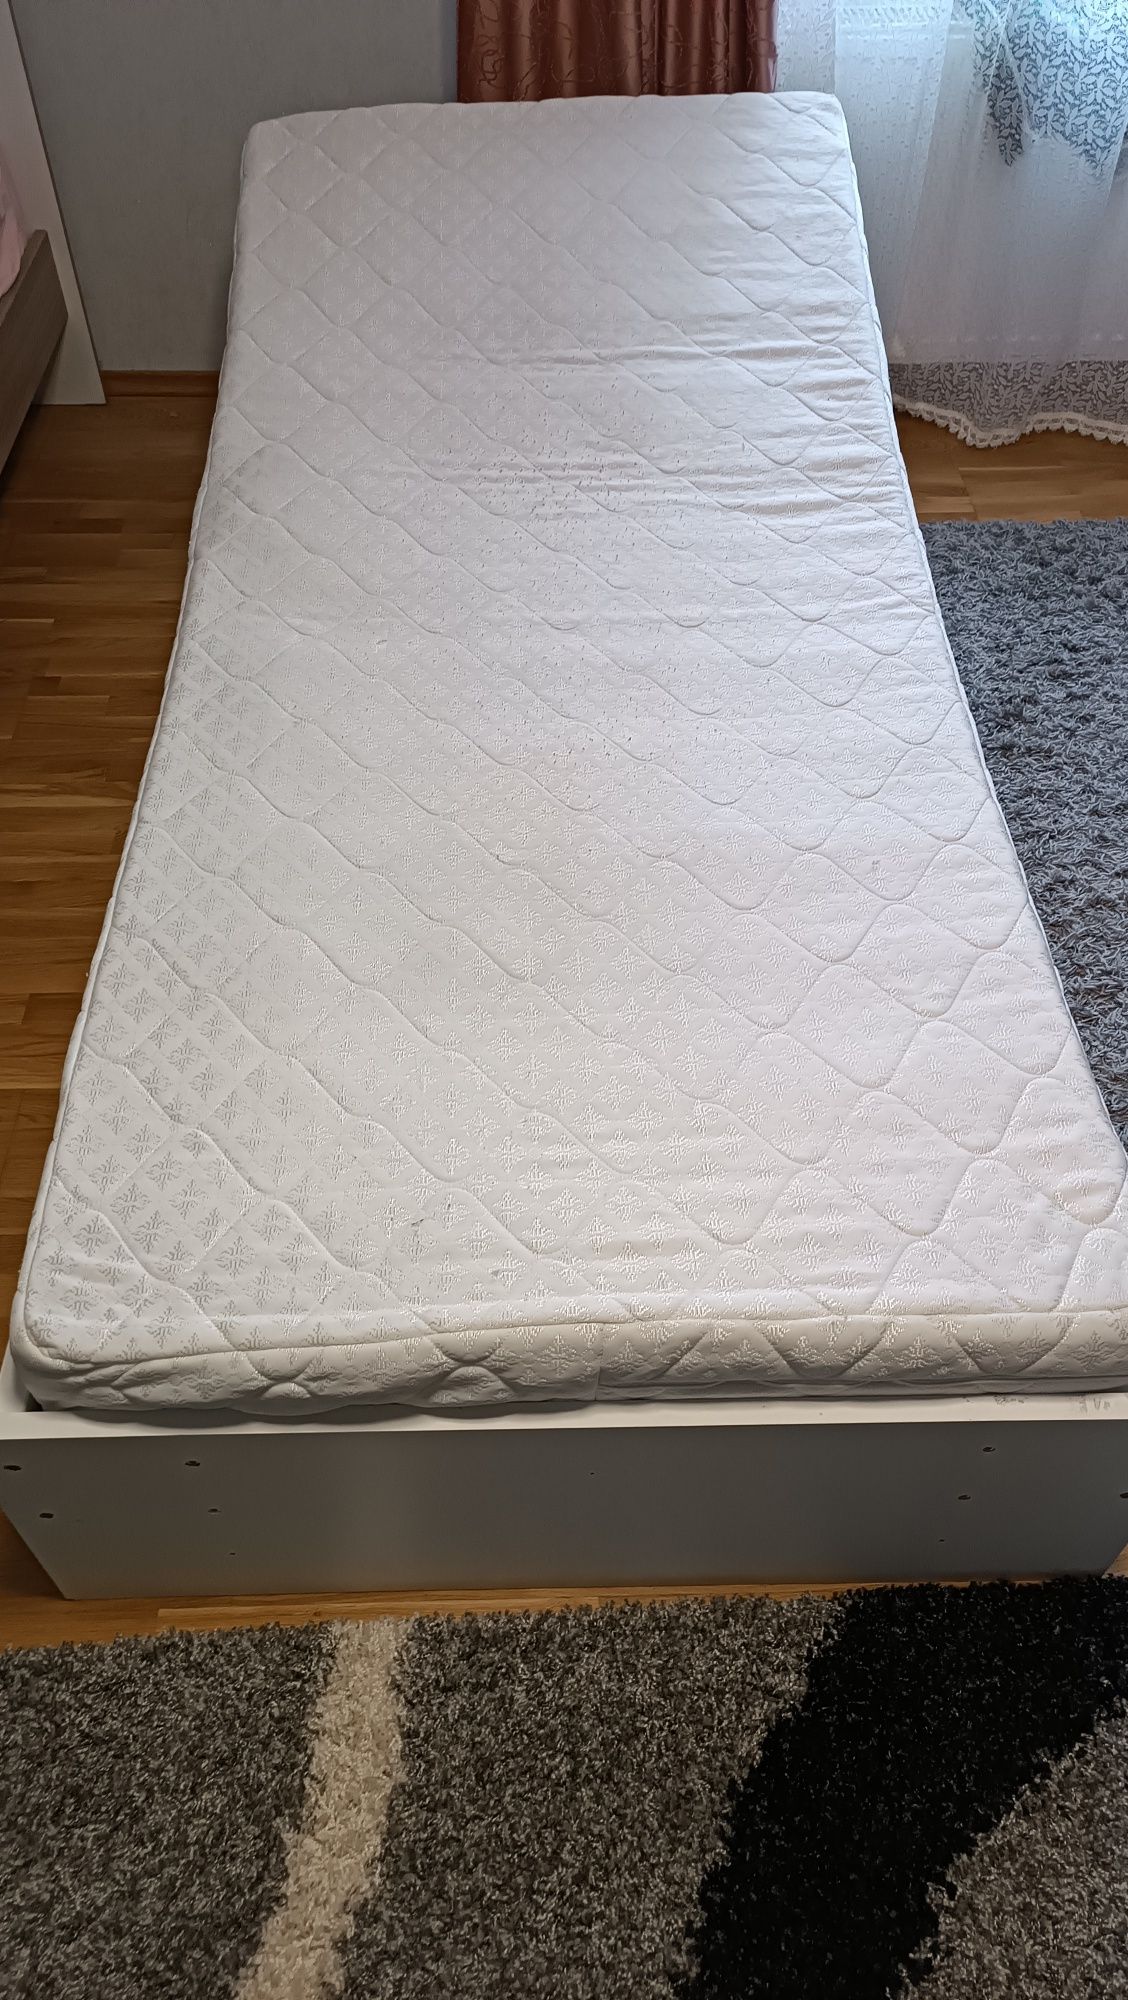 Ліжко фірми Ikea з матрацом  2 м дов, 0.9 см шир